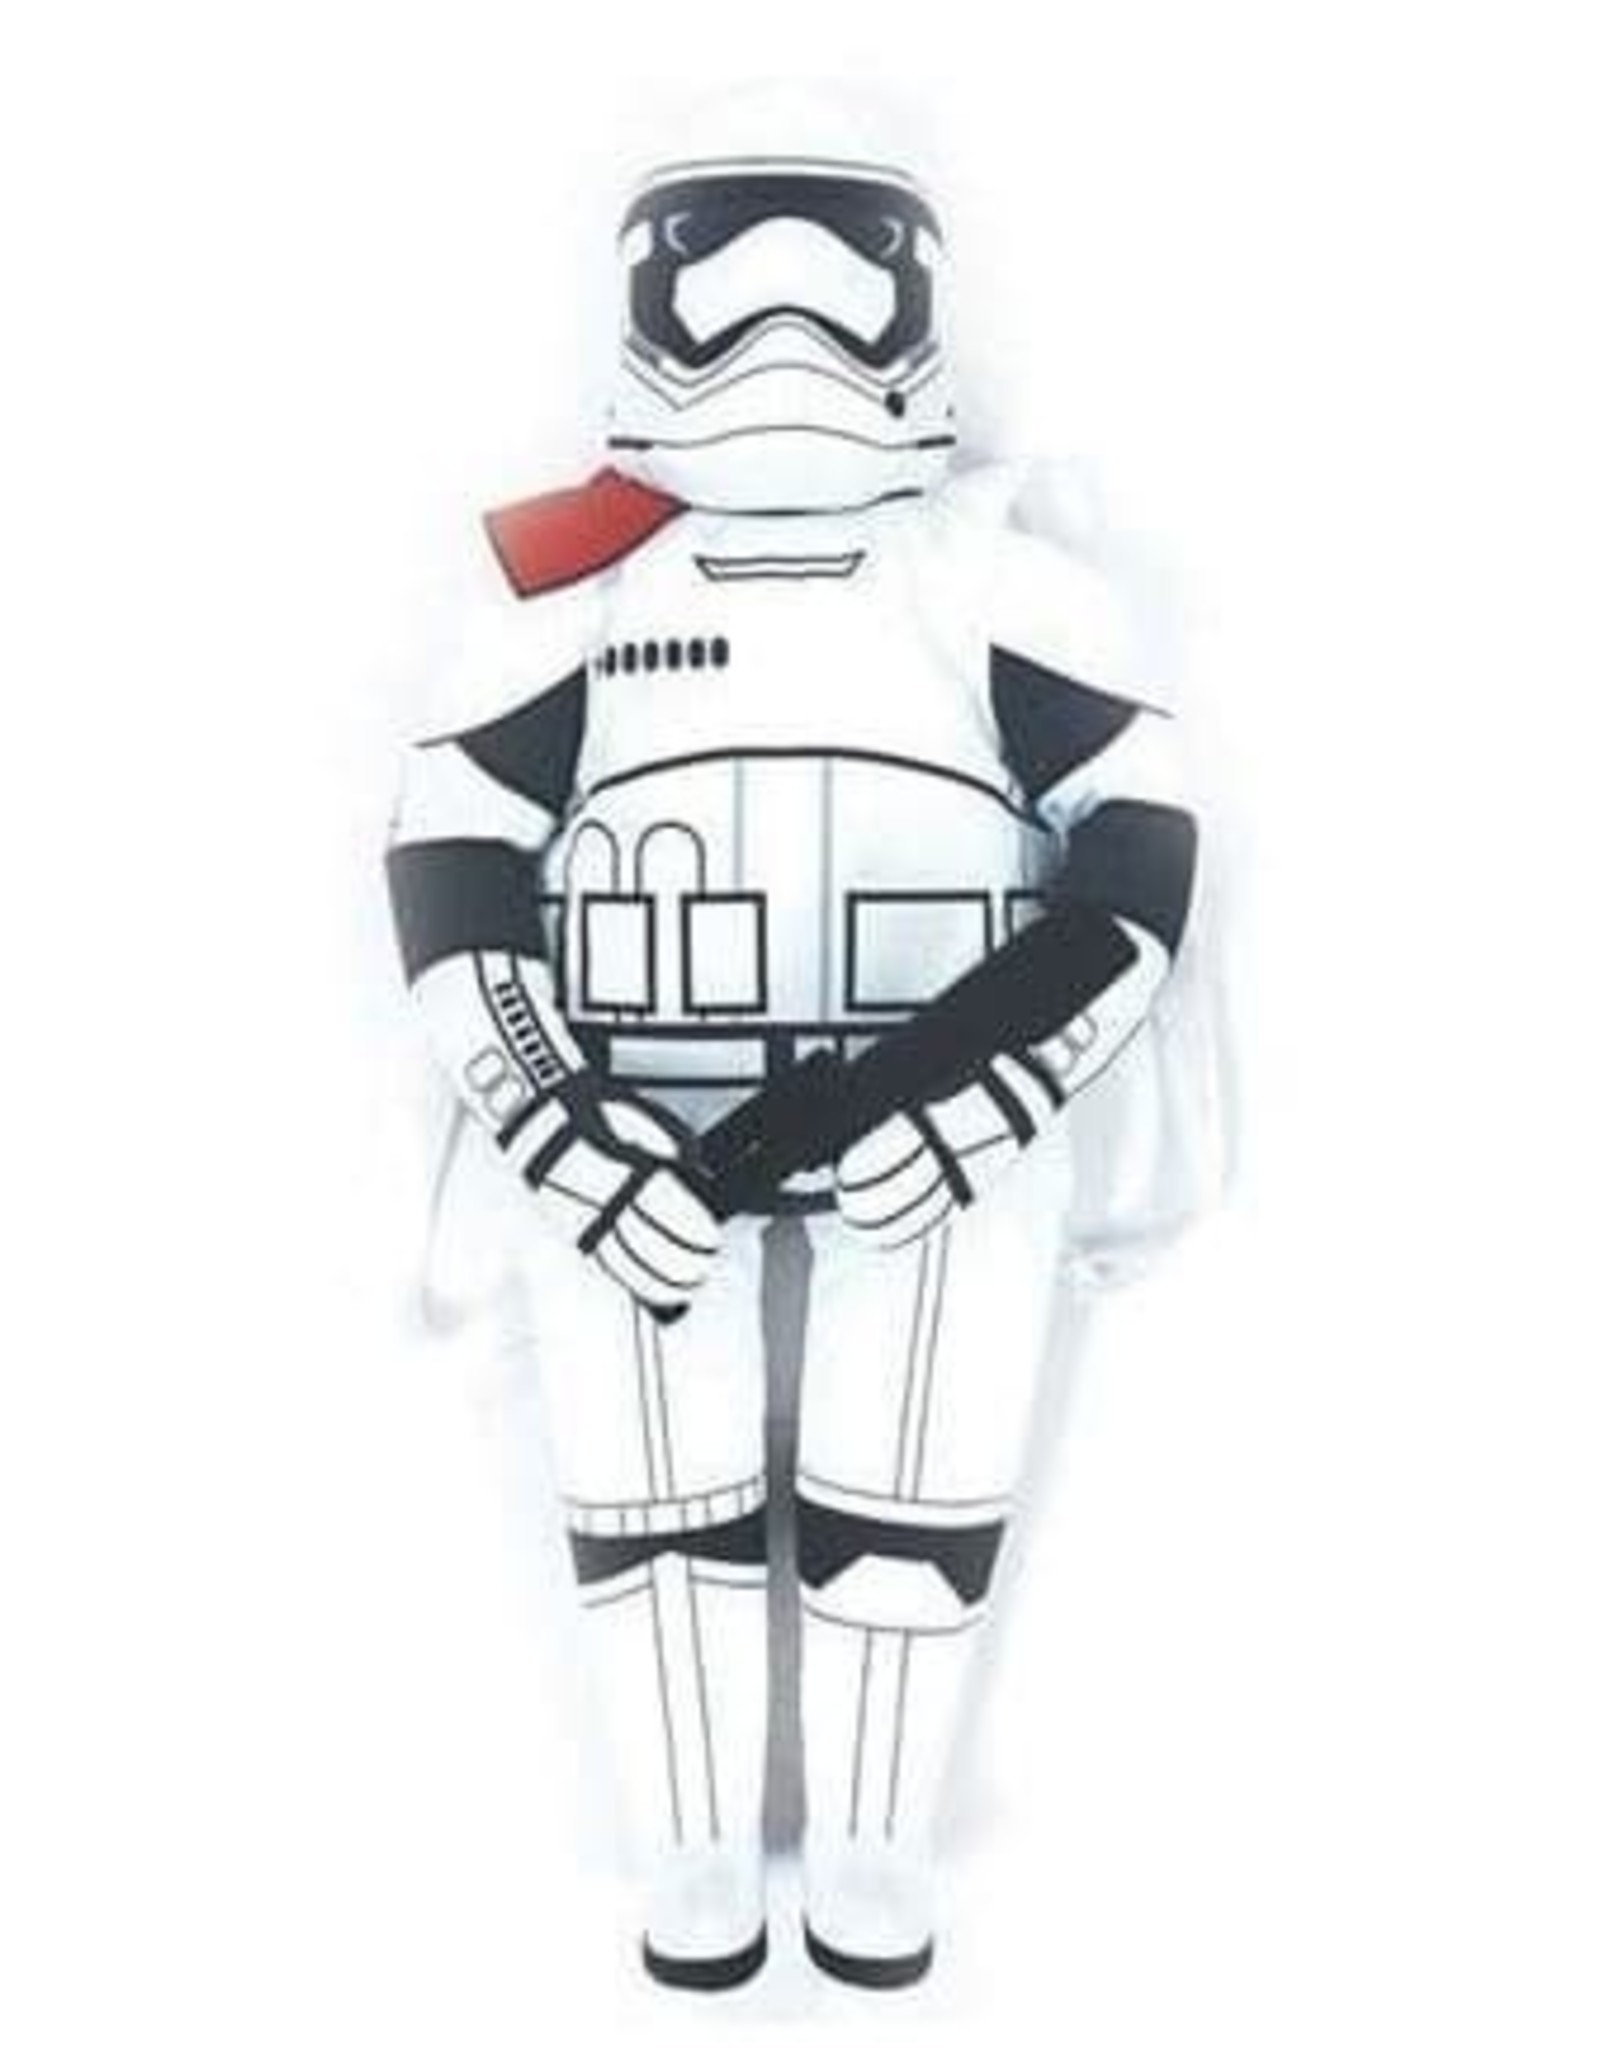 Star Wars Star Wars tassen - Star Wars Stormtrooper Buddy Rugzak